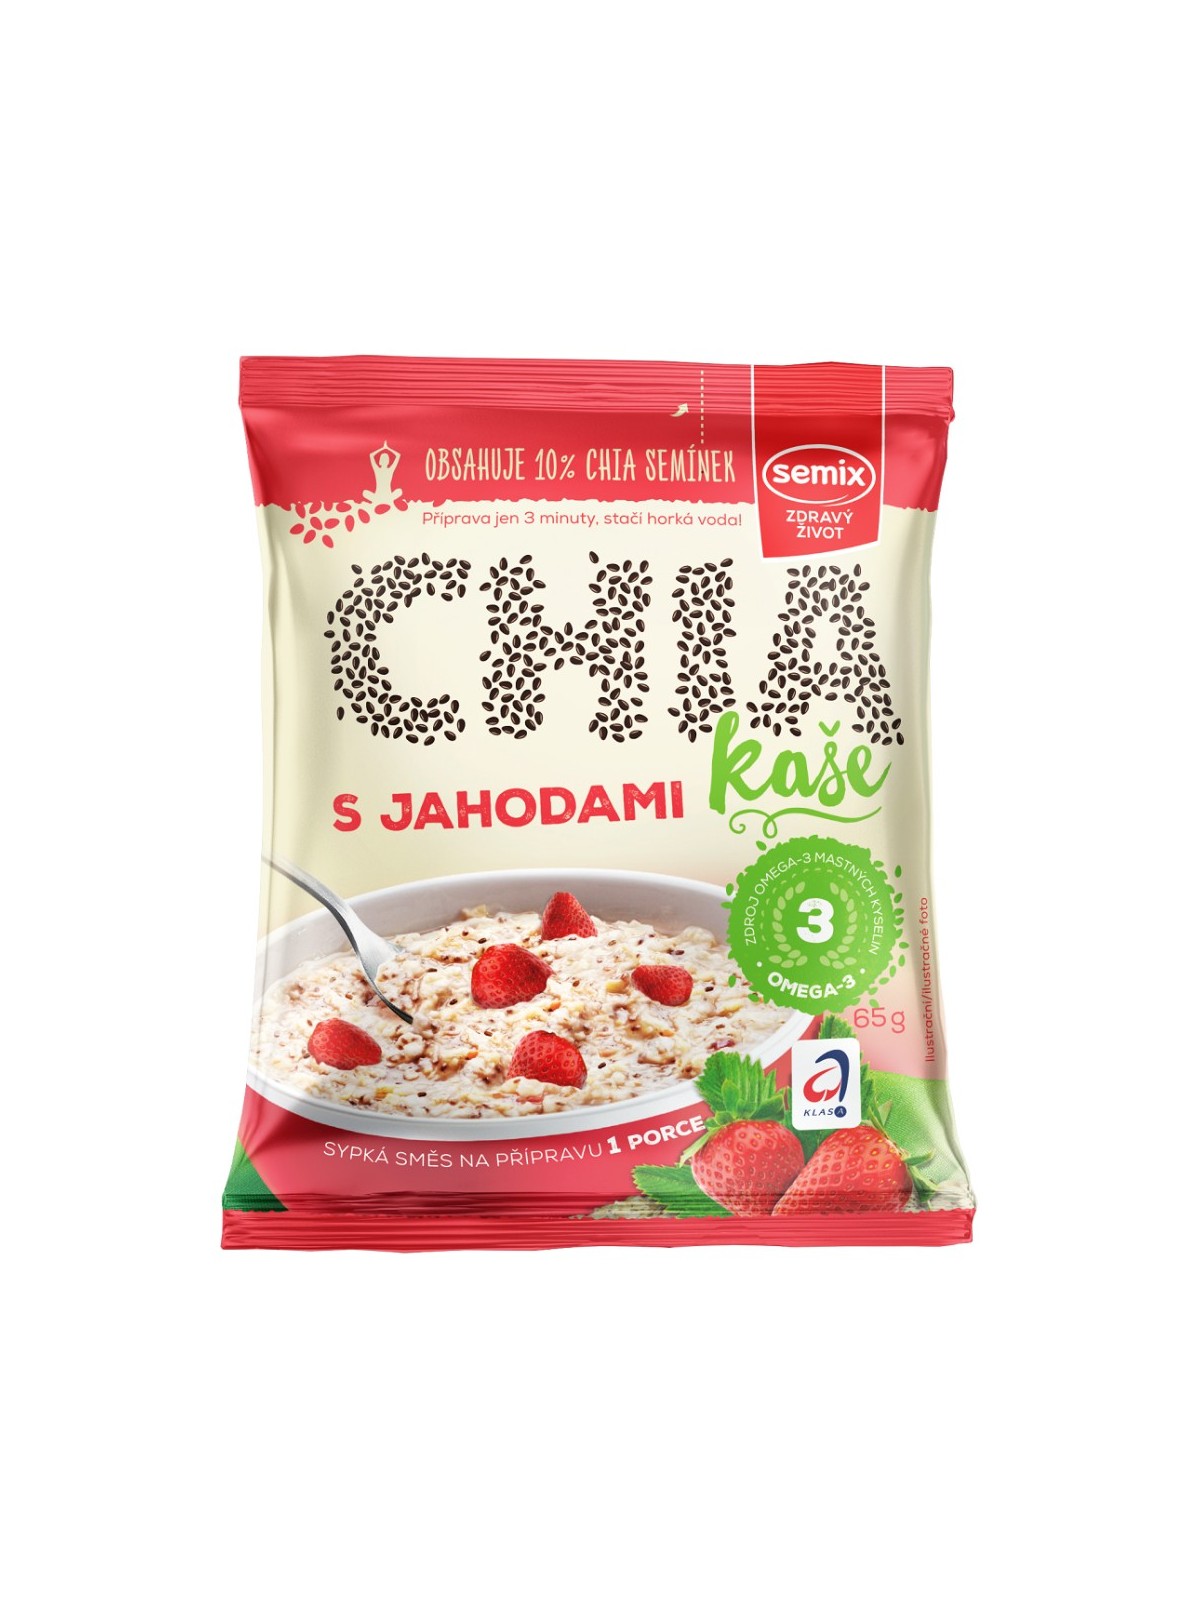 Chia porridge - strawberries and cream - 65g